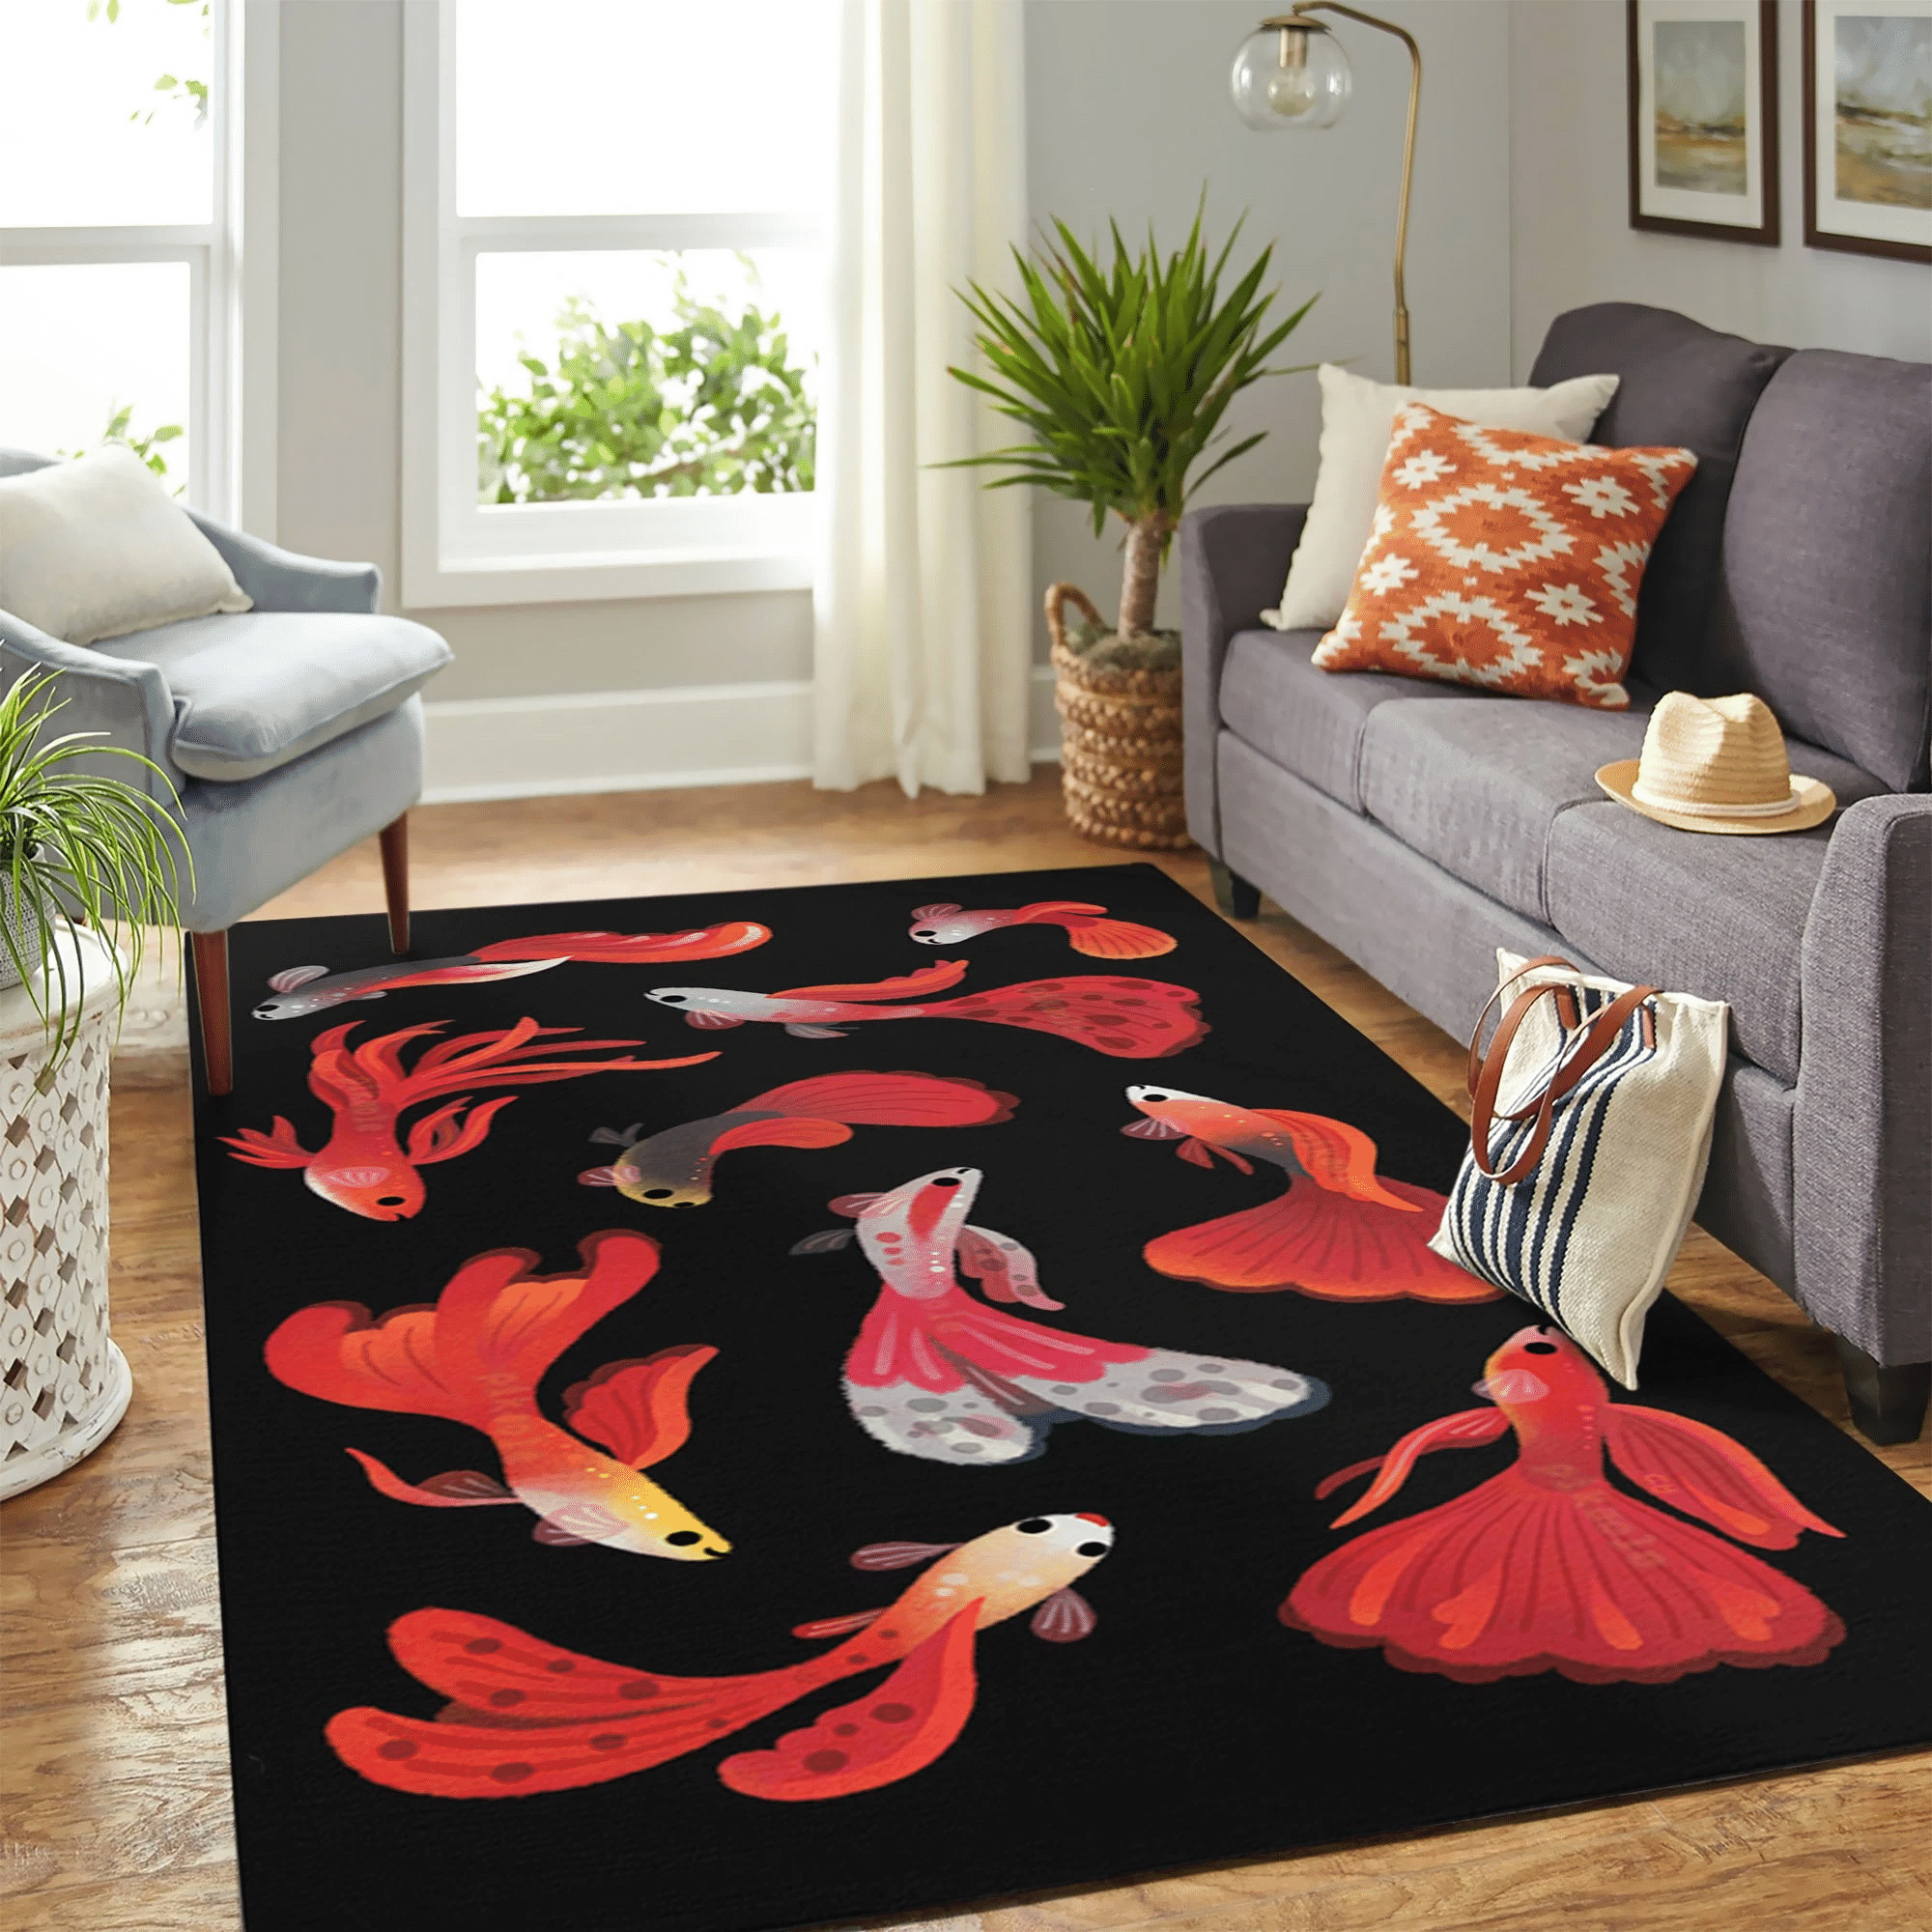 Red Fish New Carpet Floor Area Rug Chrismas Gift - Indoor Outdoor Rugs